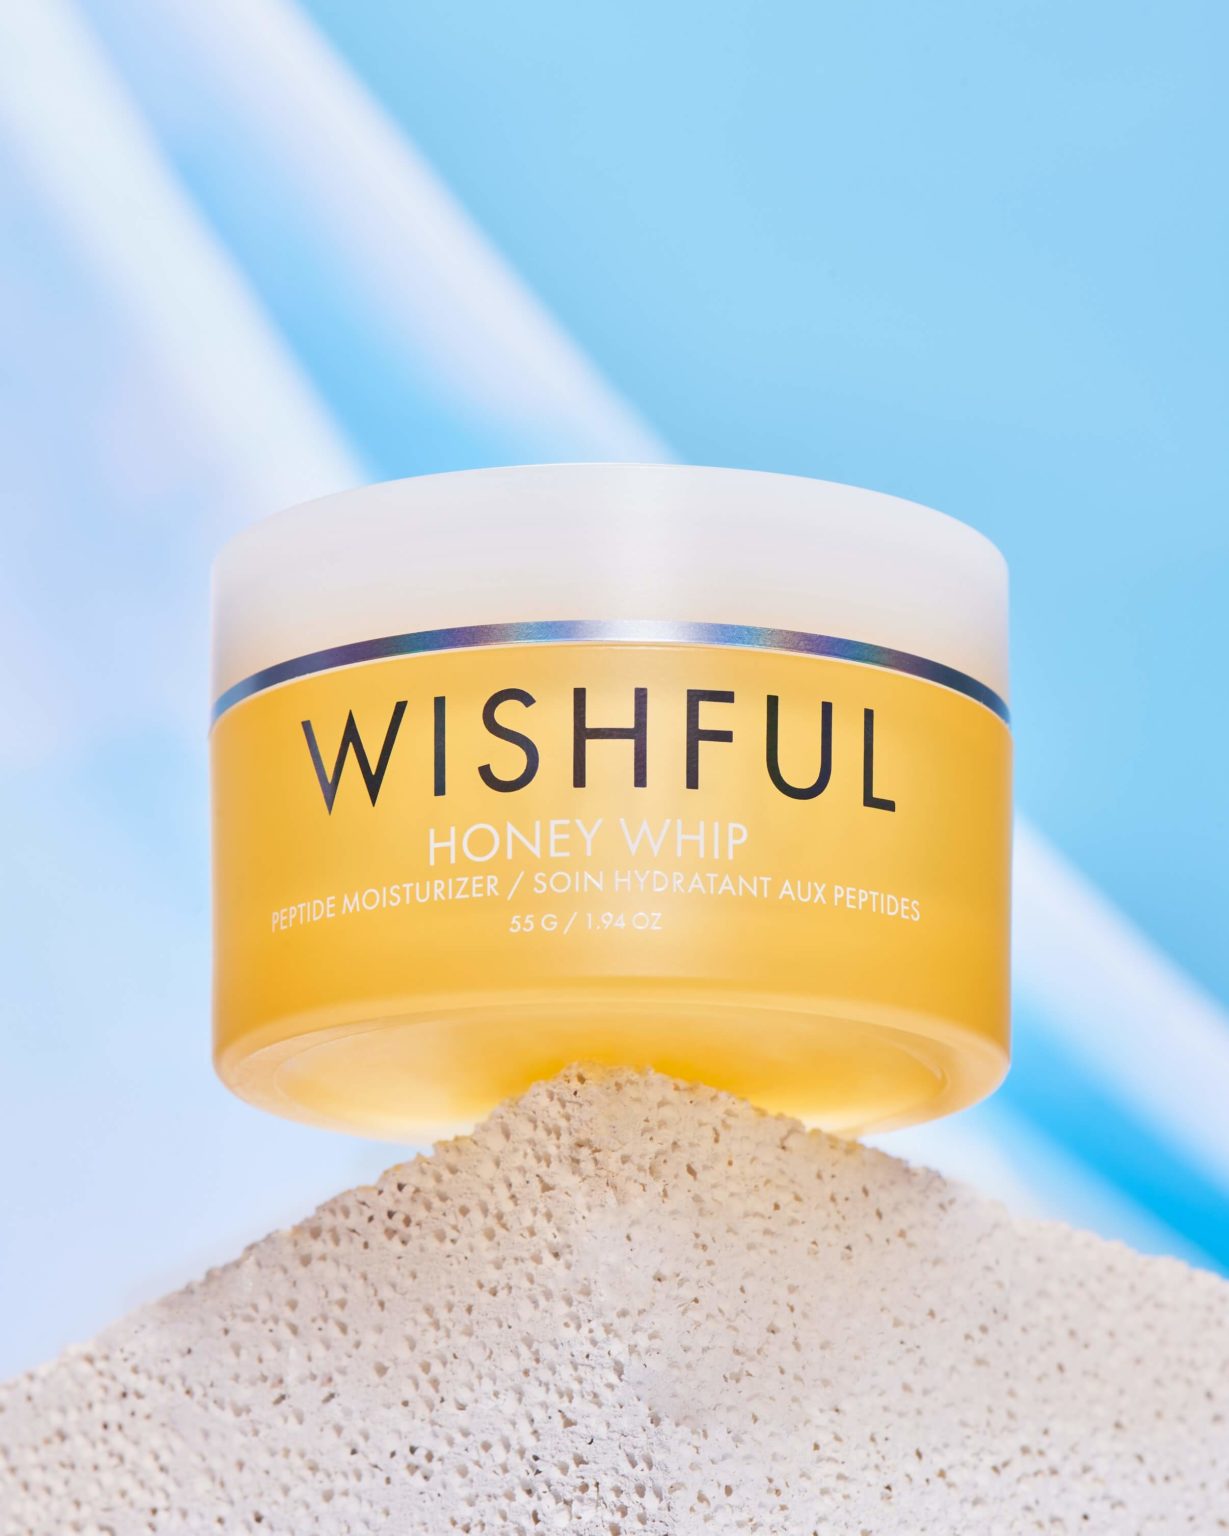 Image of a Wishful Honey whip peptide moisturizer